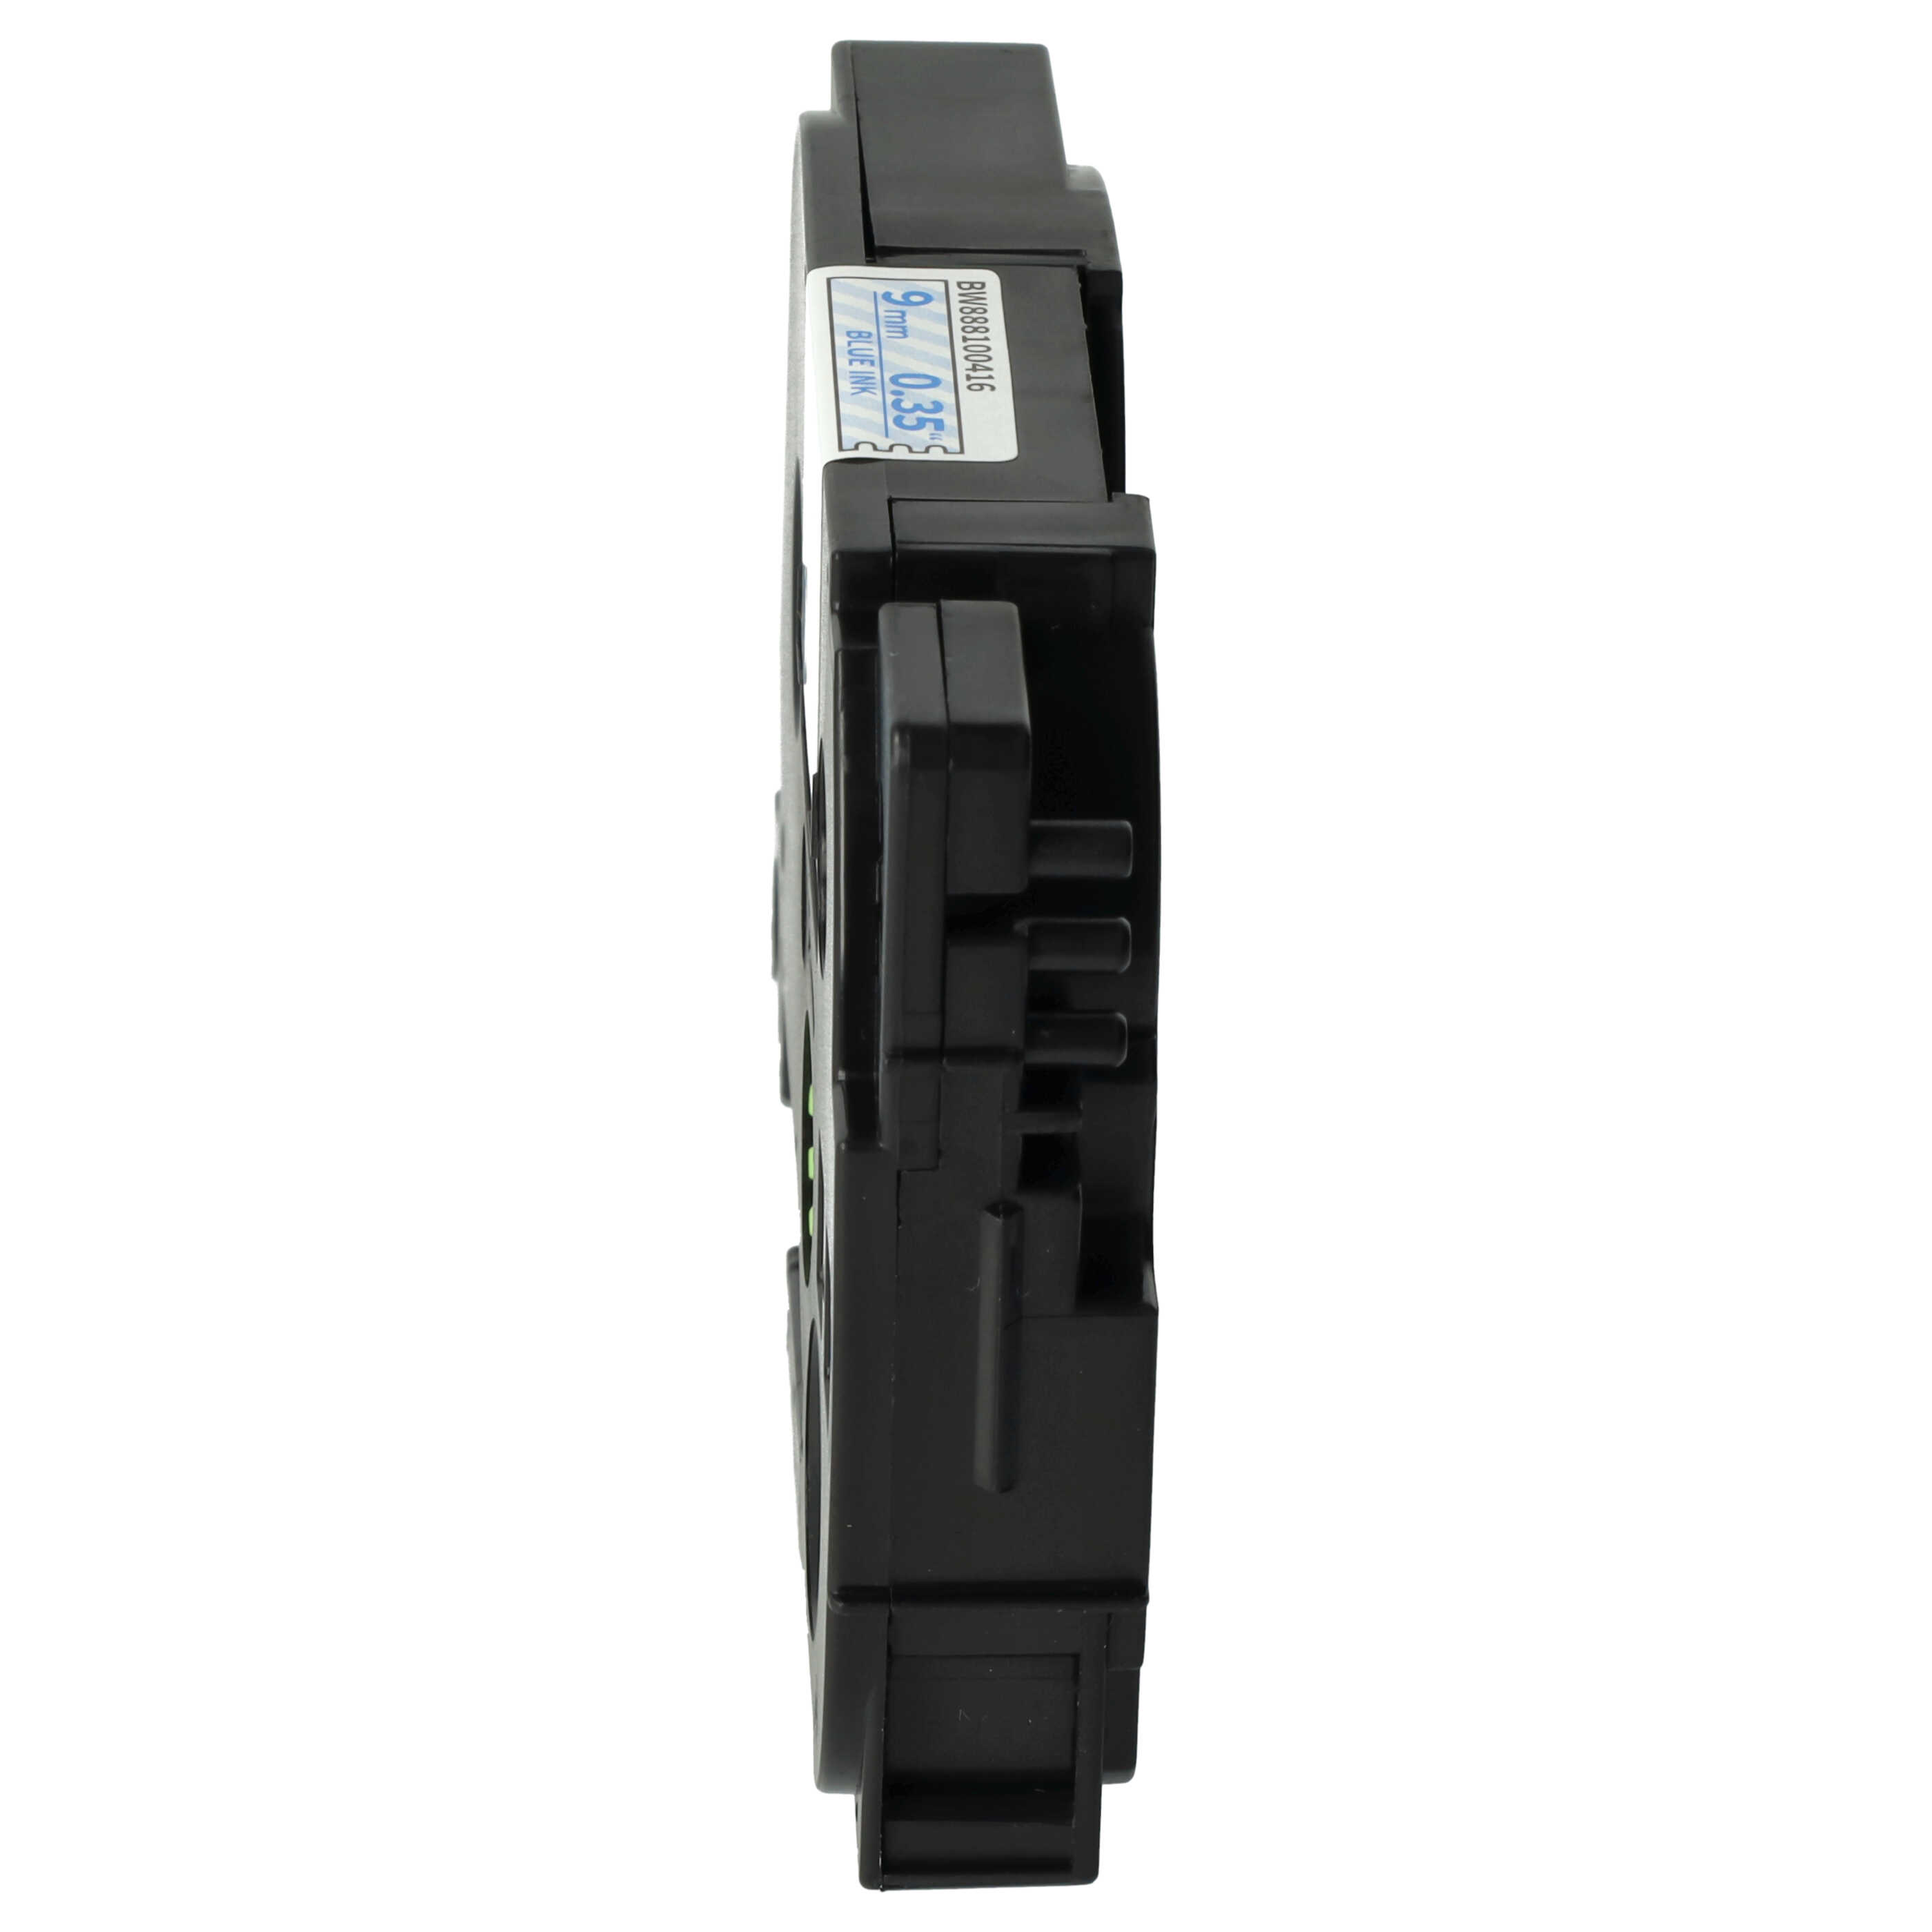 Cassette à ruban remplace Brother TZE-123 - 9mm lettrage Bleu ruban Transparent